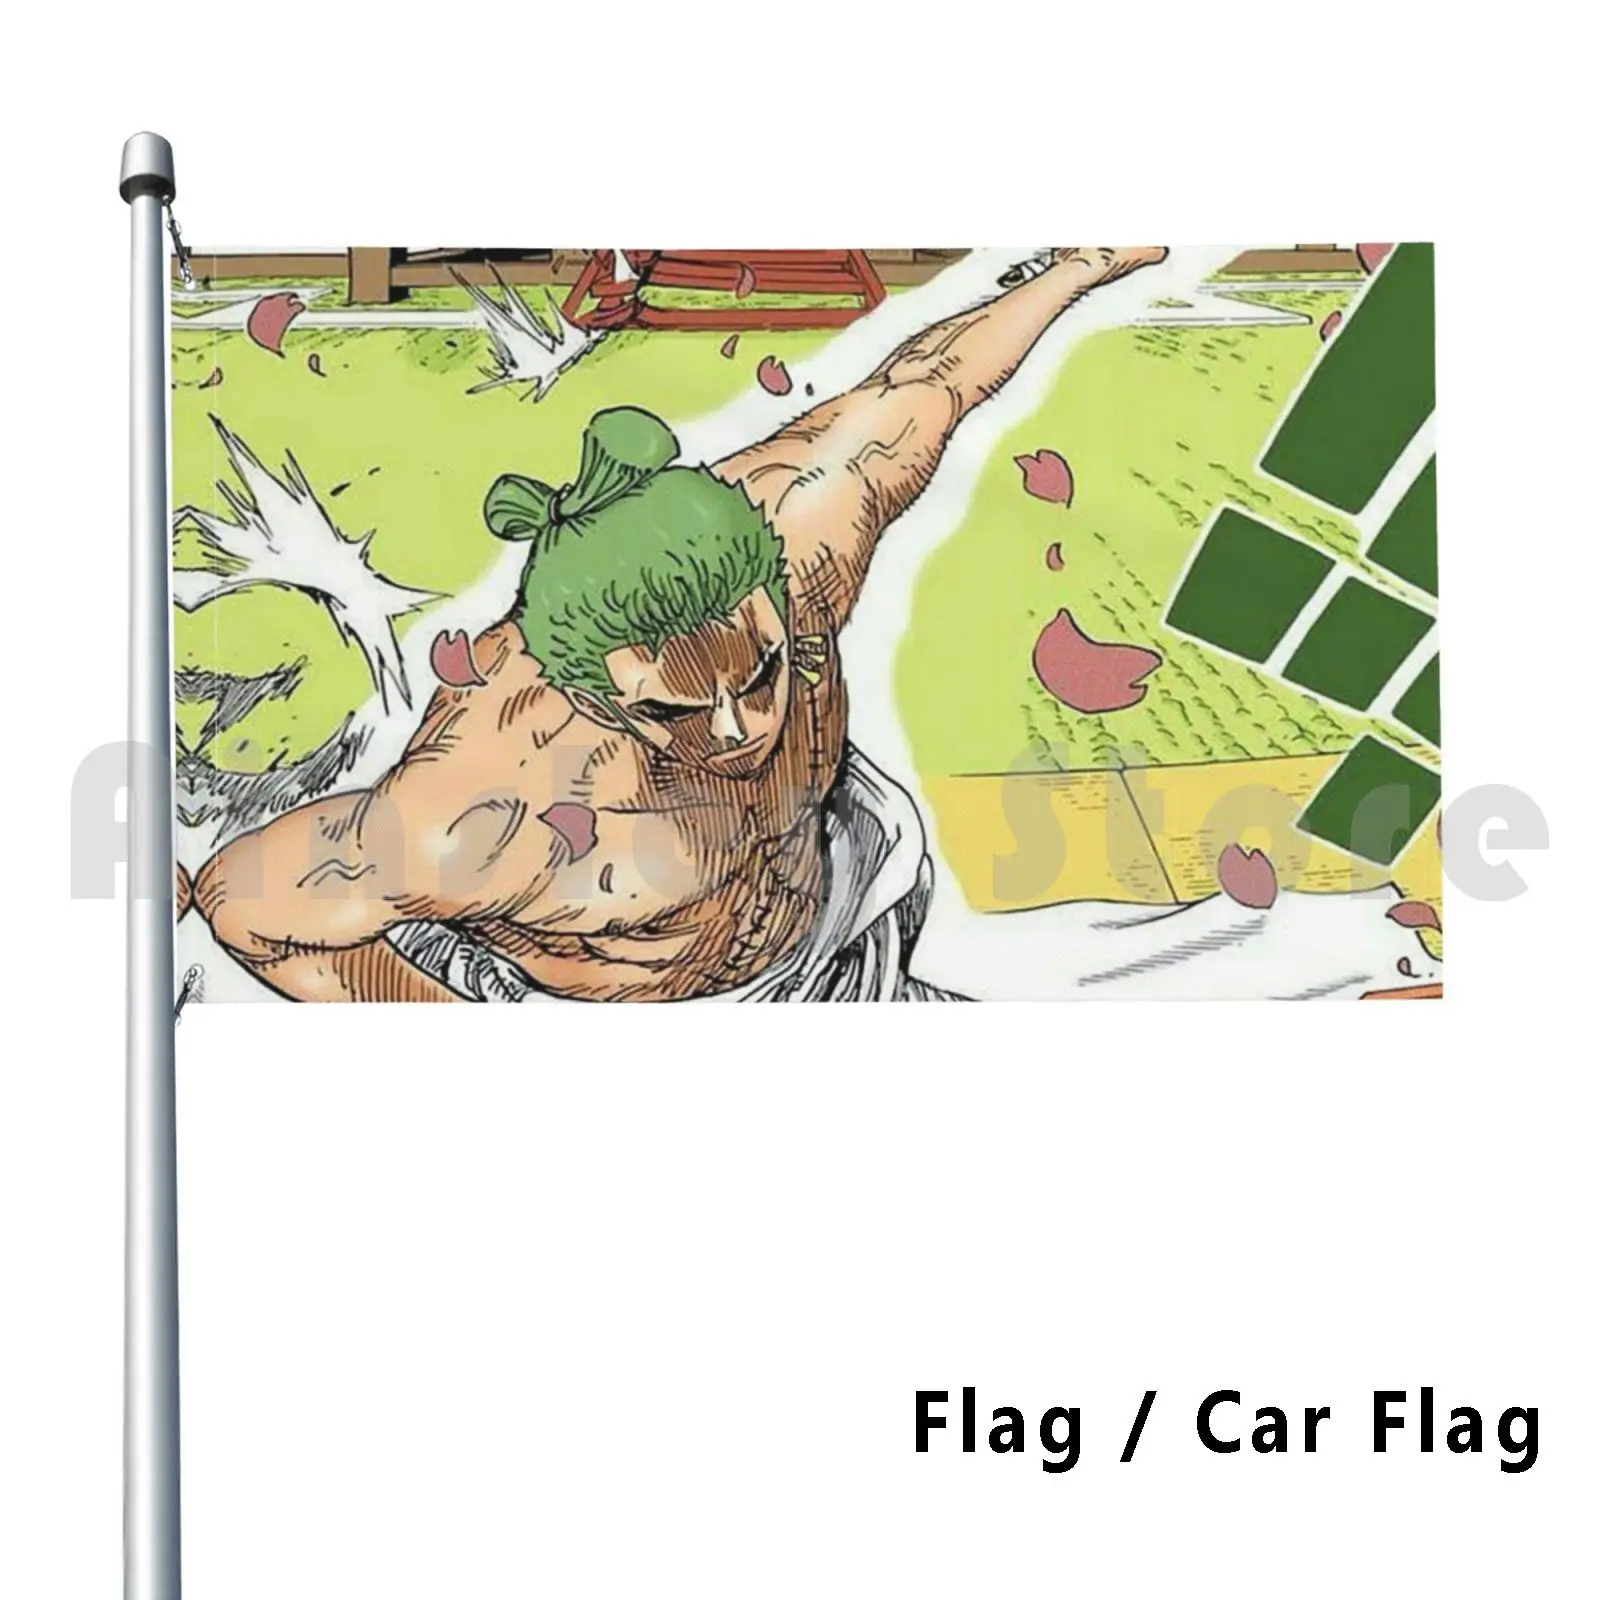 Zoro Wano Kuni Outdoor Decor Flag Car Flag Zoro Wano Sword Katana Roronoa Manga Anime Kuni Luffy